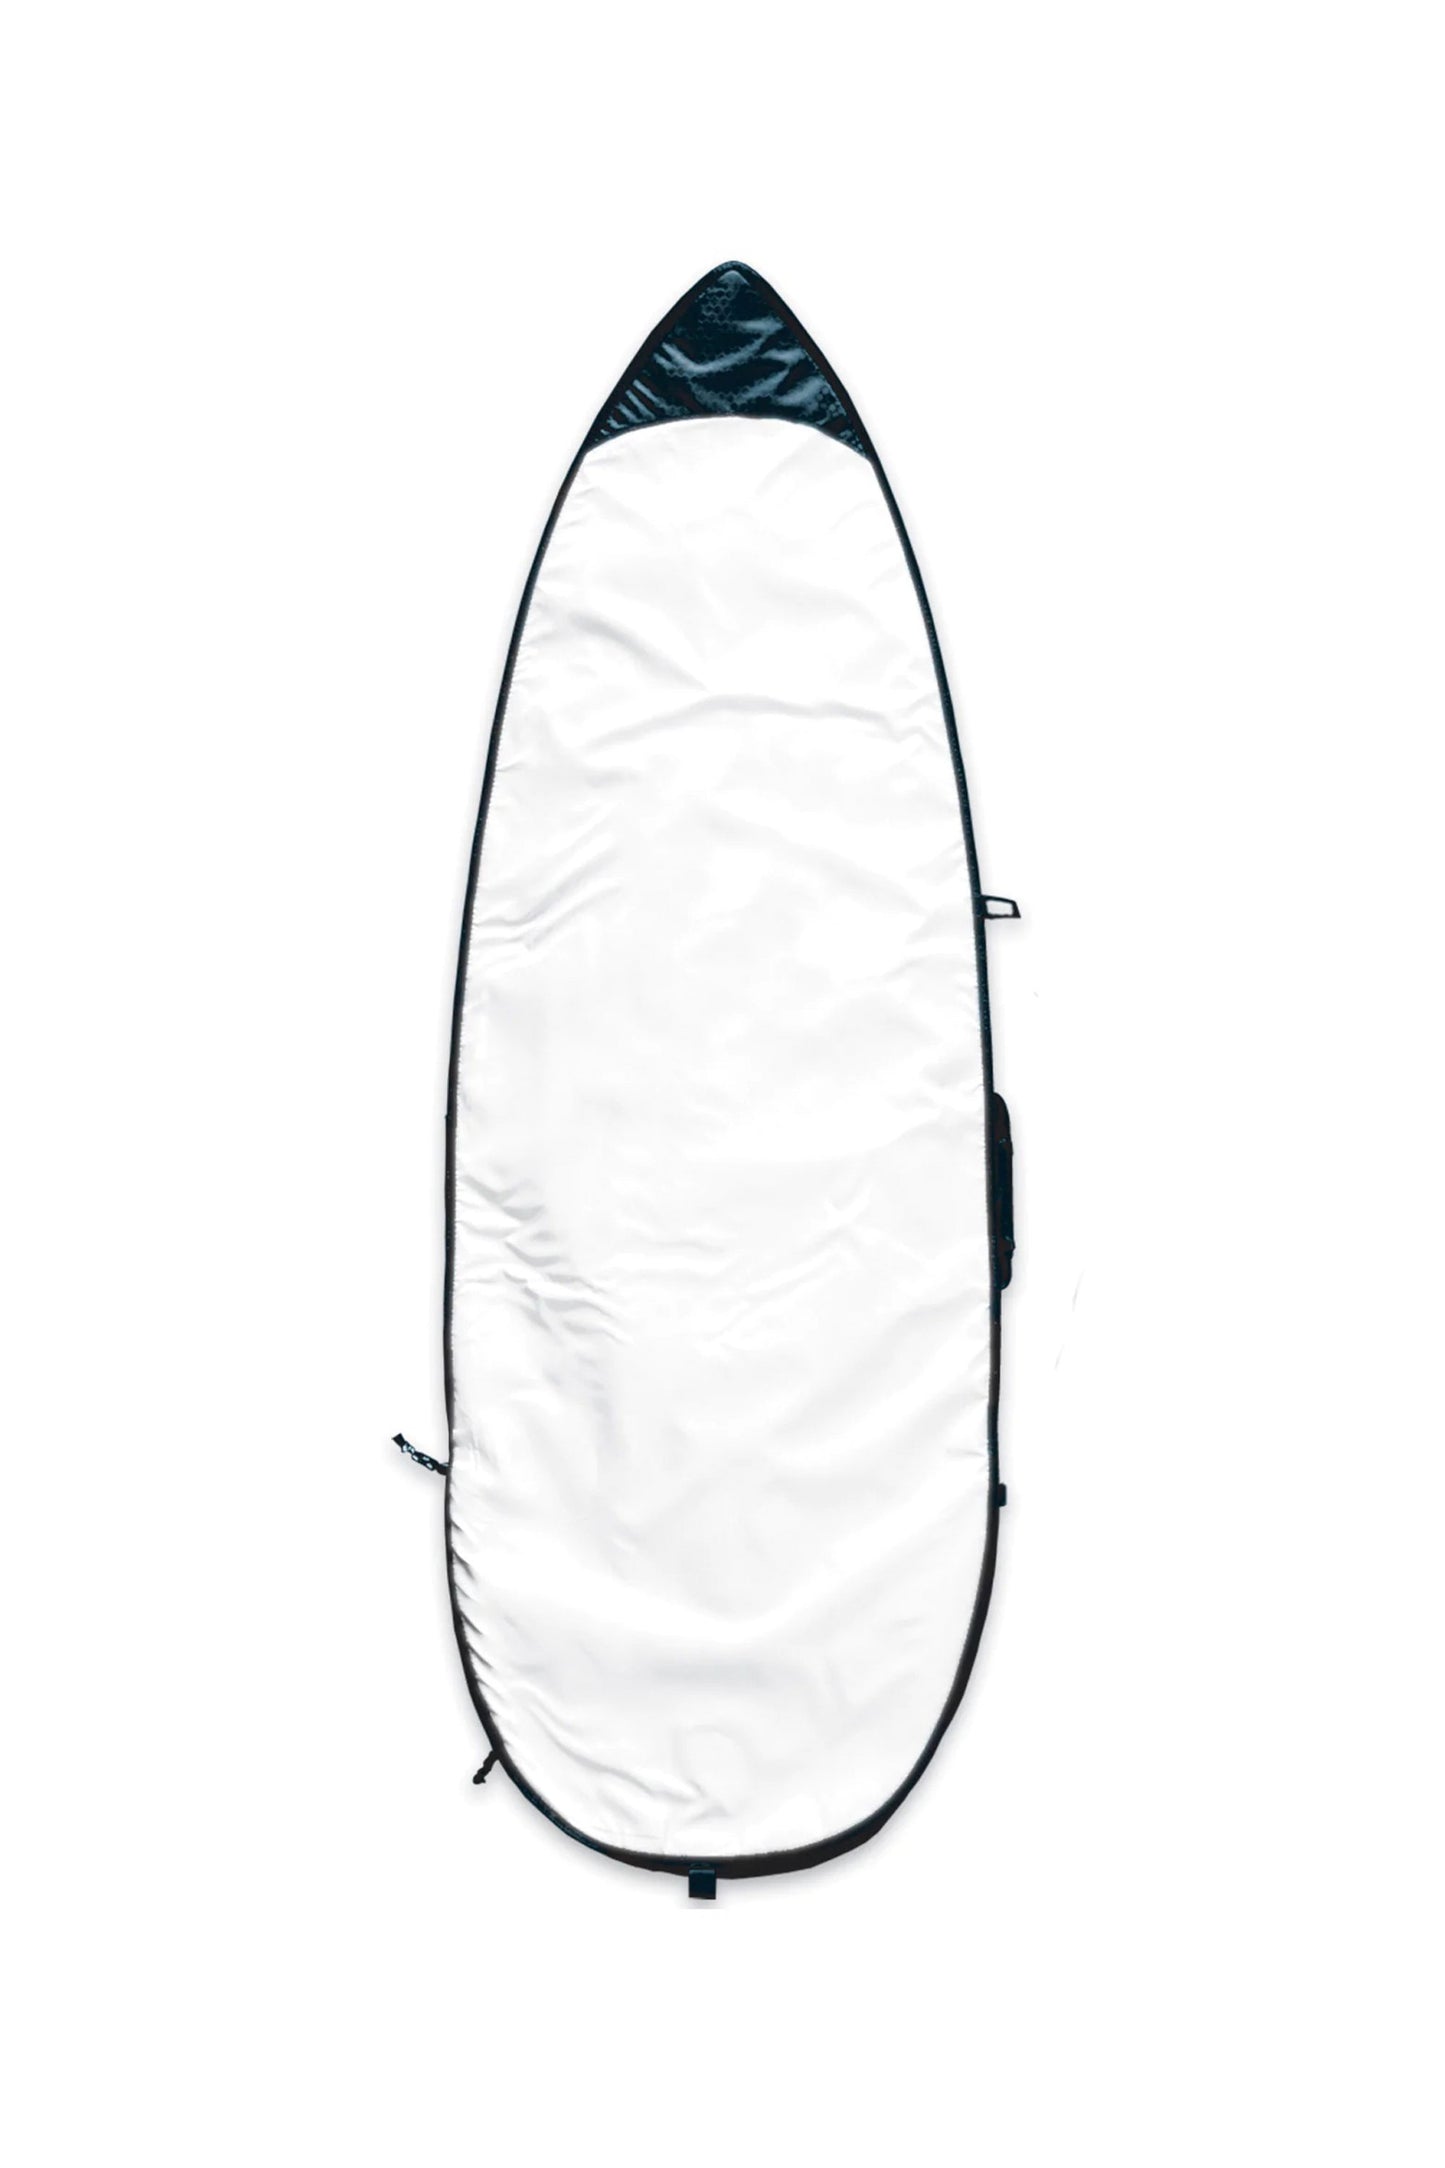    Pukas-Surf-Shop-channel-islands-boardbag-Feather-Lite-Bag-5.8